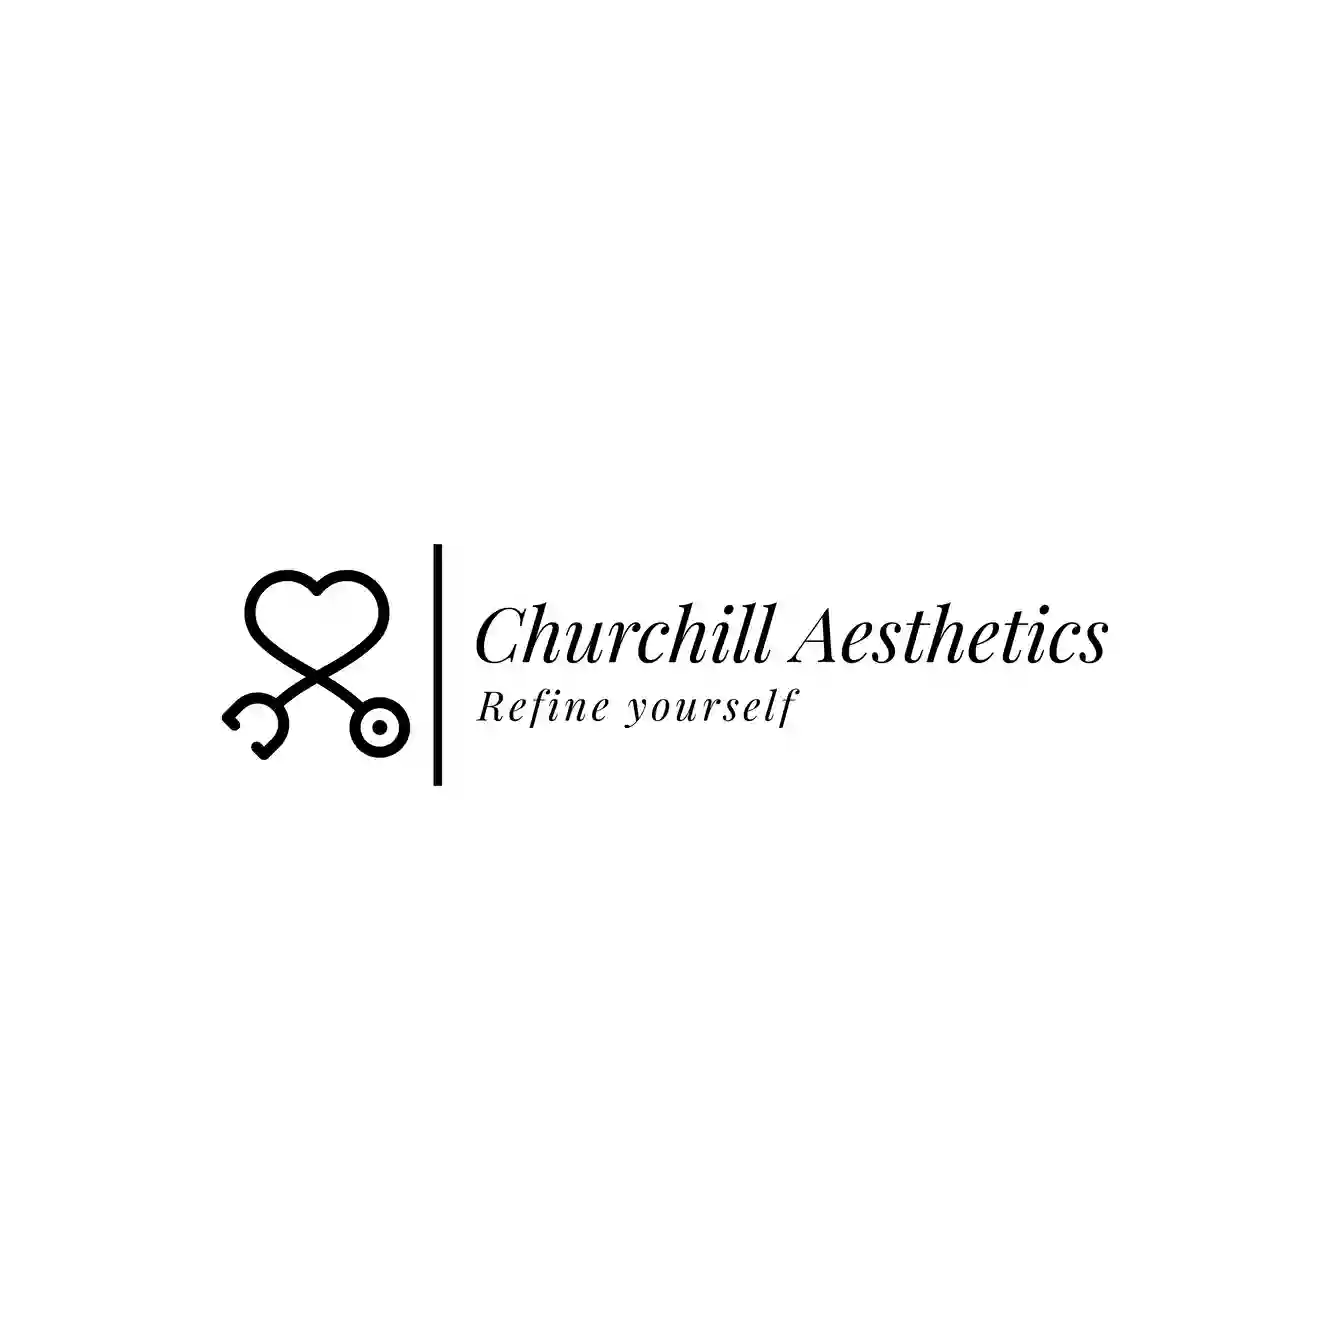 Churchill Aesthetics